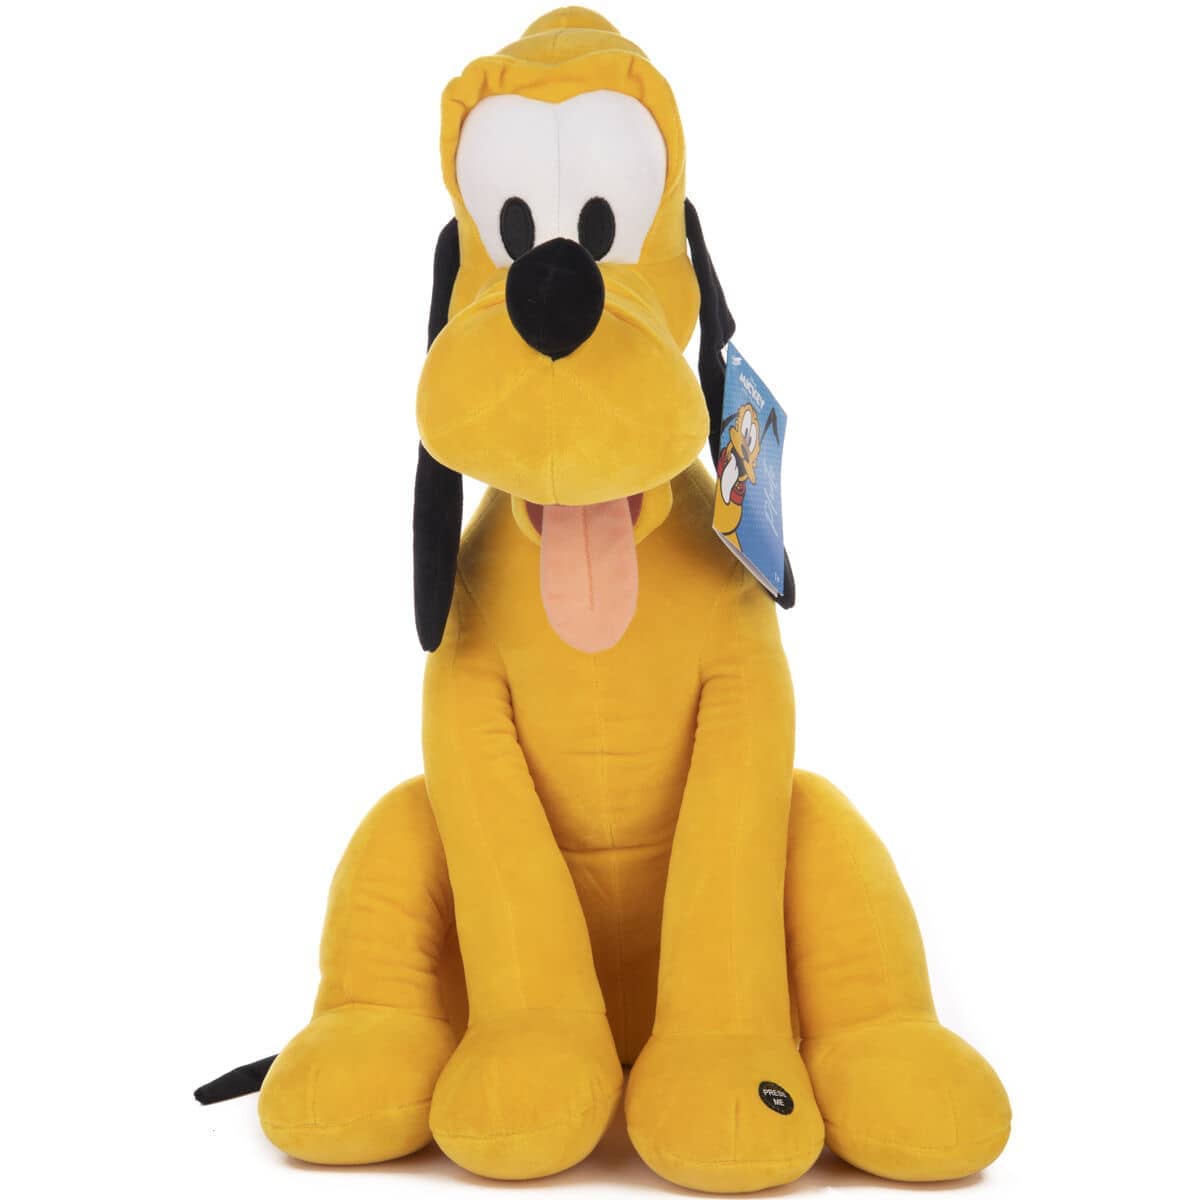 Peluche Pluto Disney 30cm sonido - Espadas y Más